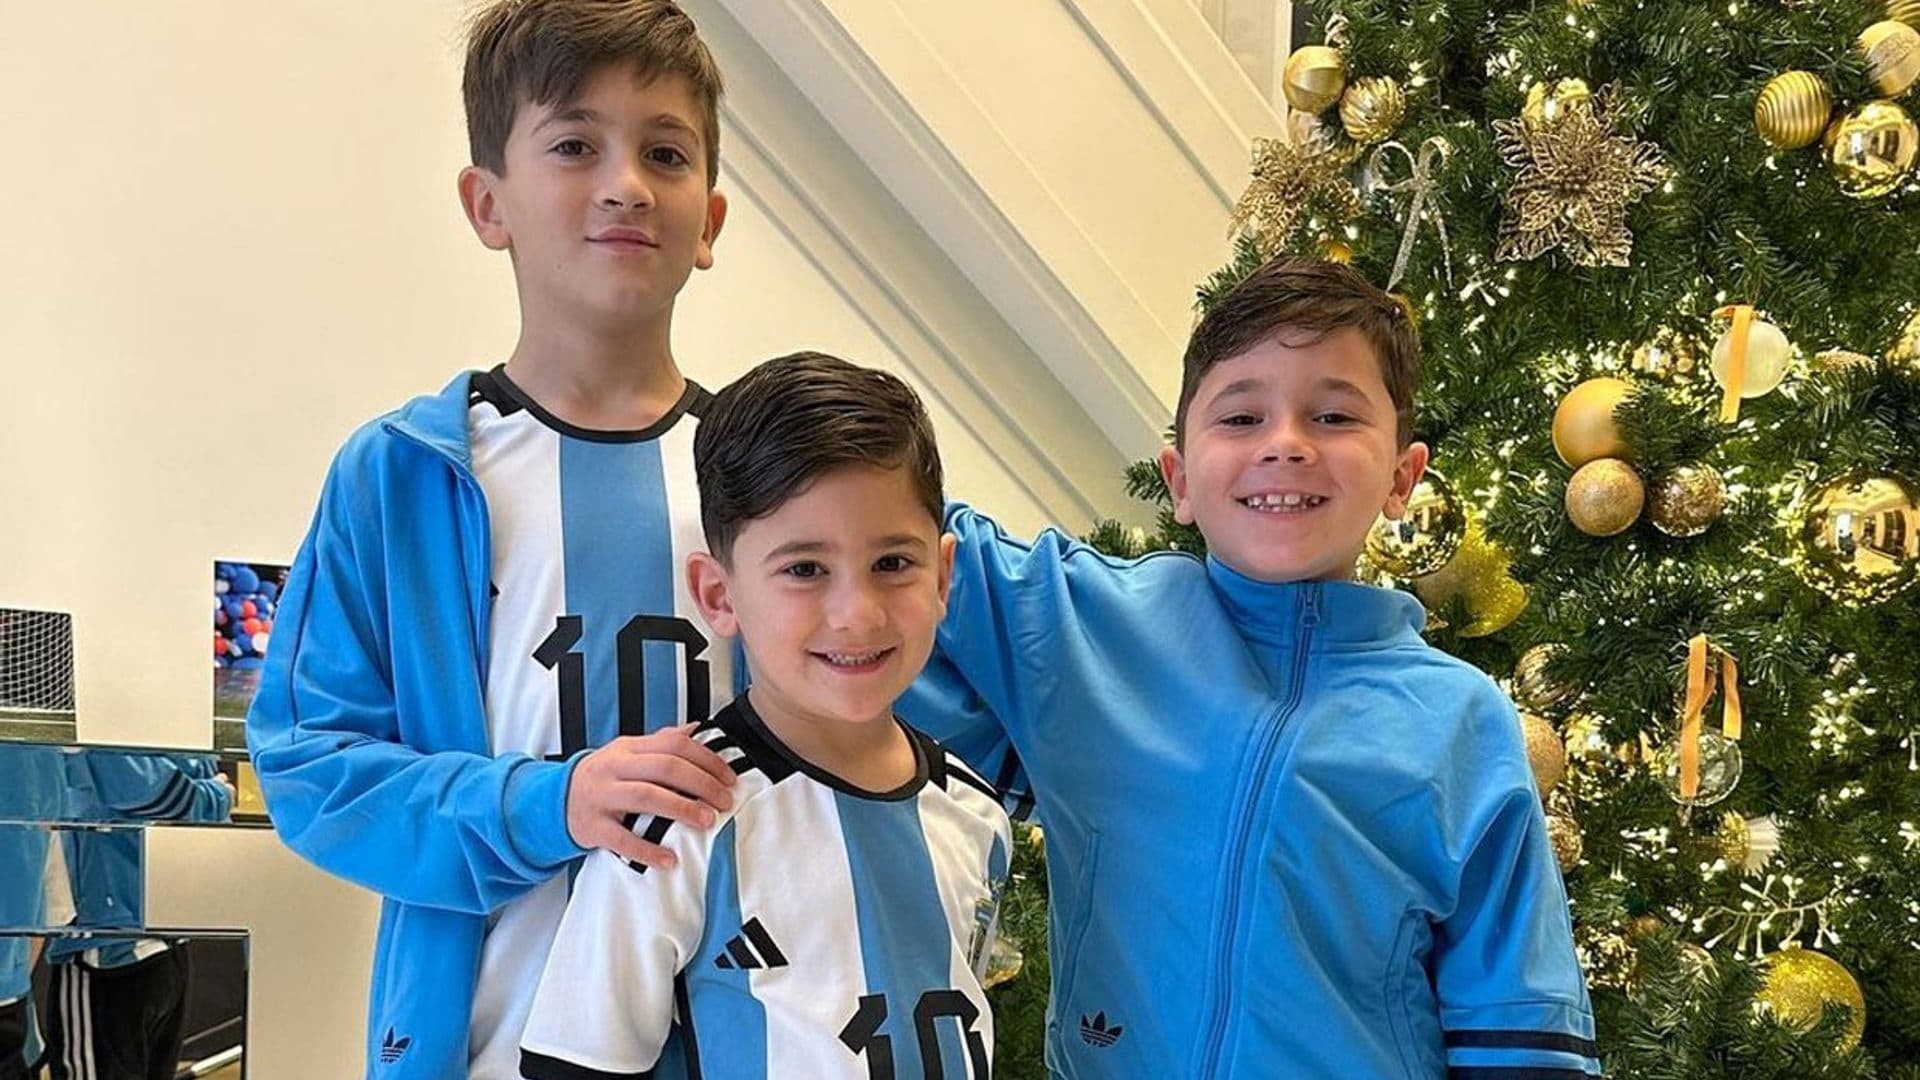 Camisetas, manicura con la bandera argentina... Antonela Roccuzzo y sus hijos ya tienen todo listo para el Mundial